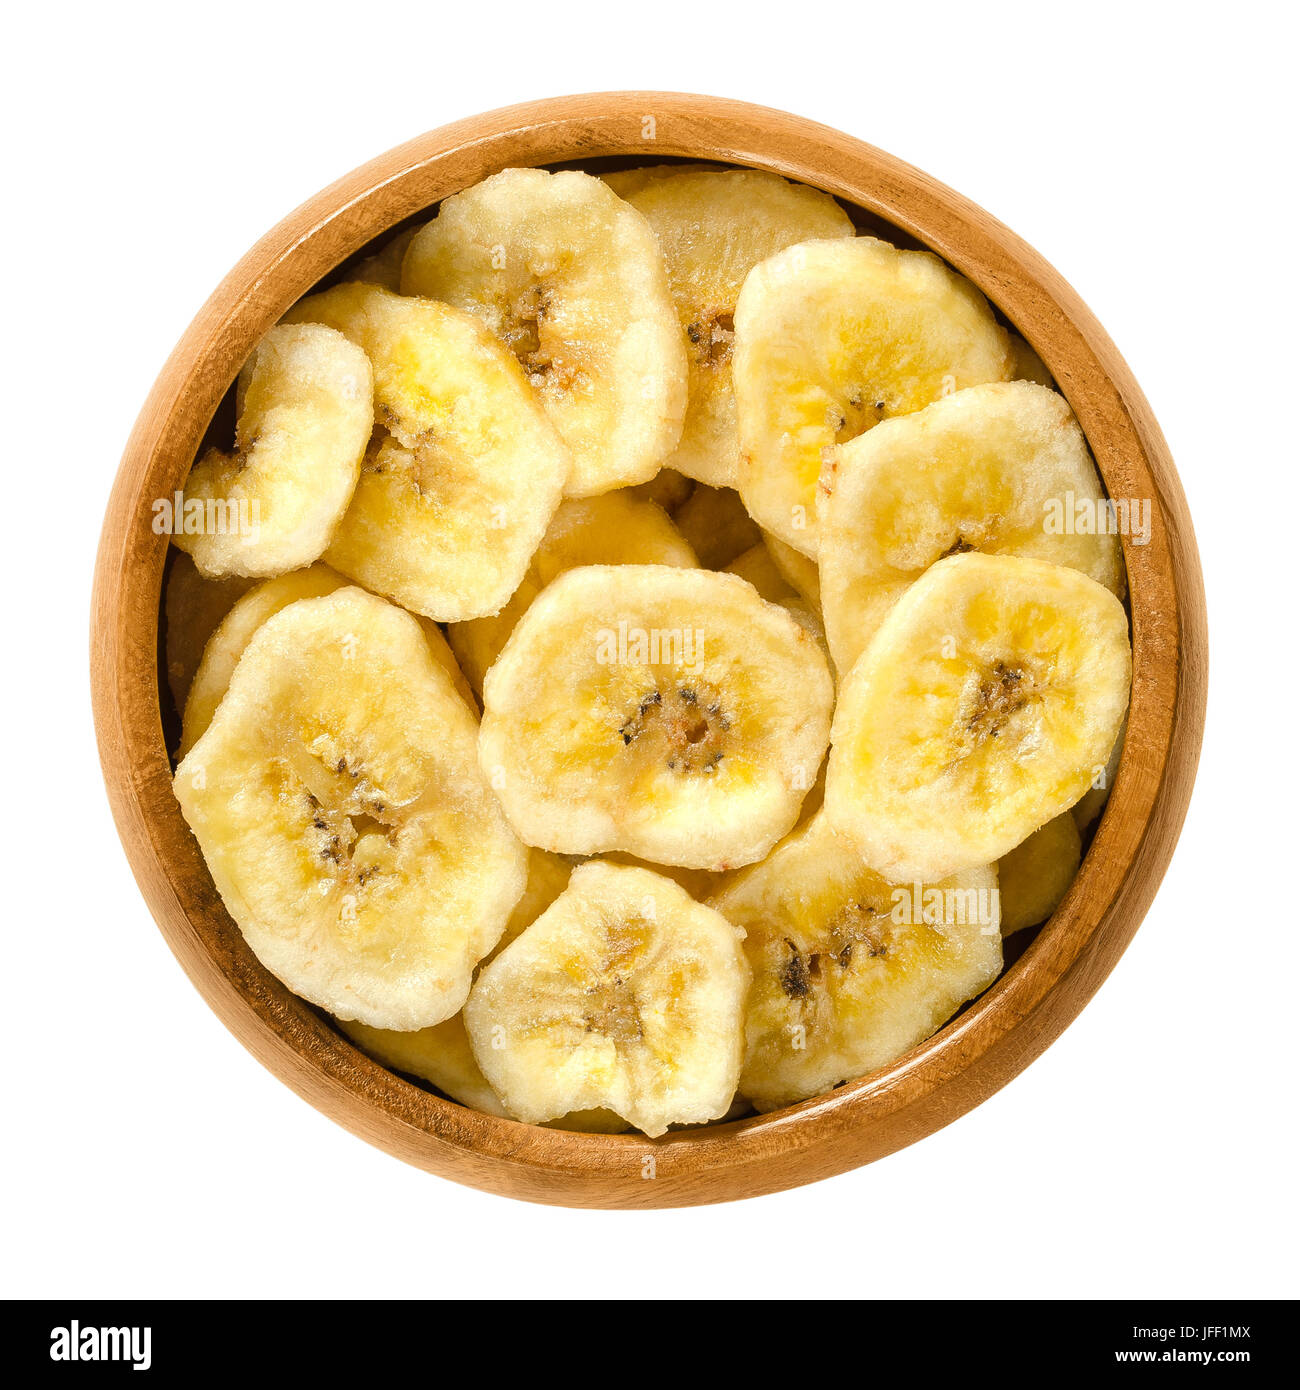 Getrocknete Bananenchips in Holzschale. Gelbe tiefe gebratenen Scheiben Bananen, mit Zucker oder Honig bedeckt. Snack mit süßen Geschmack. Isolierte Makrofoto Essen Stockfoto